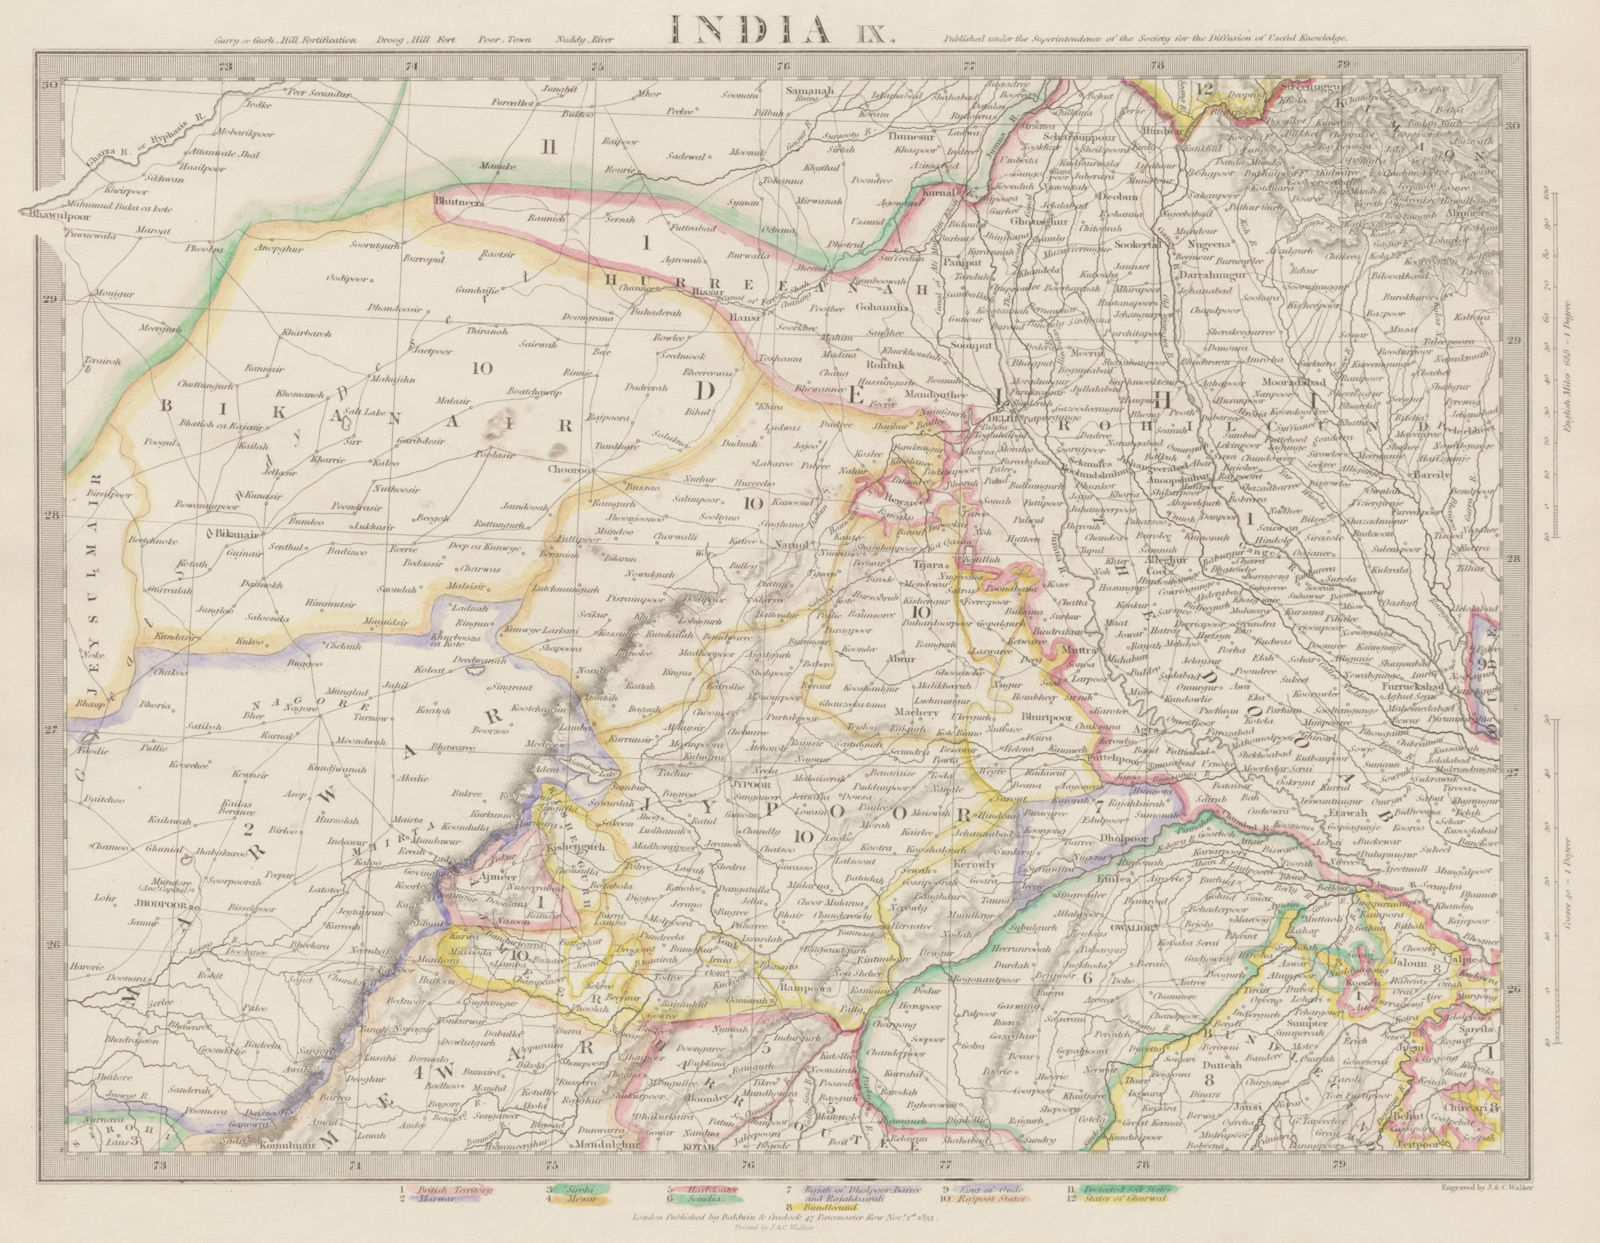 RAJASTHAN, India. Delhi Jaipur Marwar Bikaner Mewar Bundelkhand. SDUK 1844 map